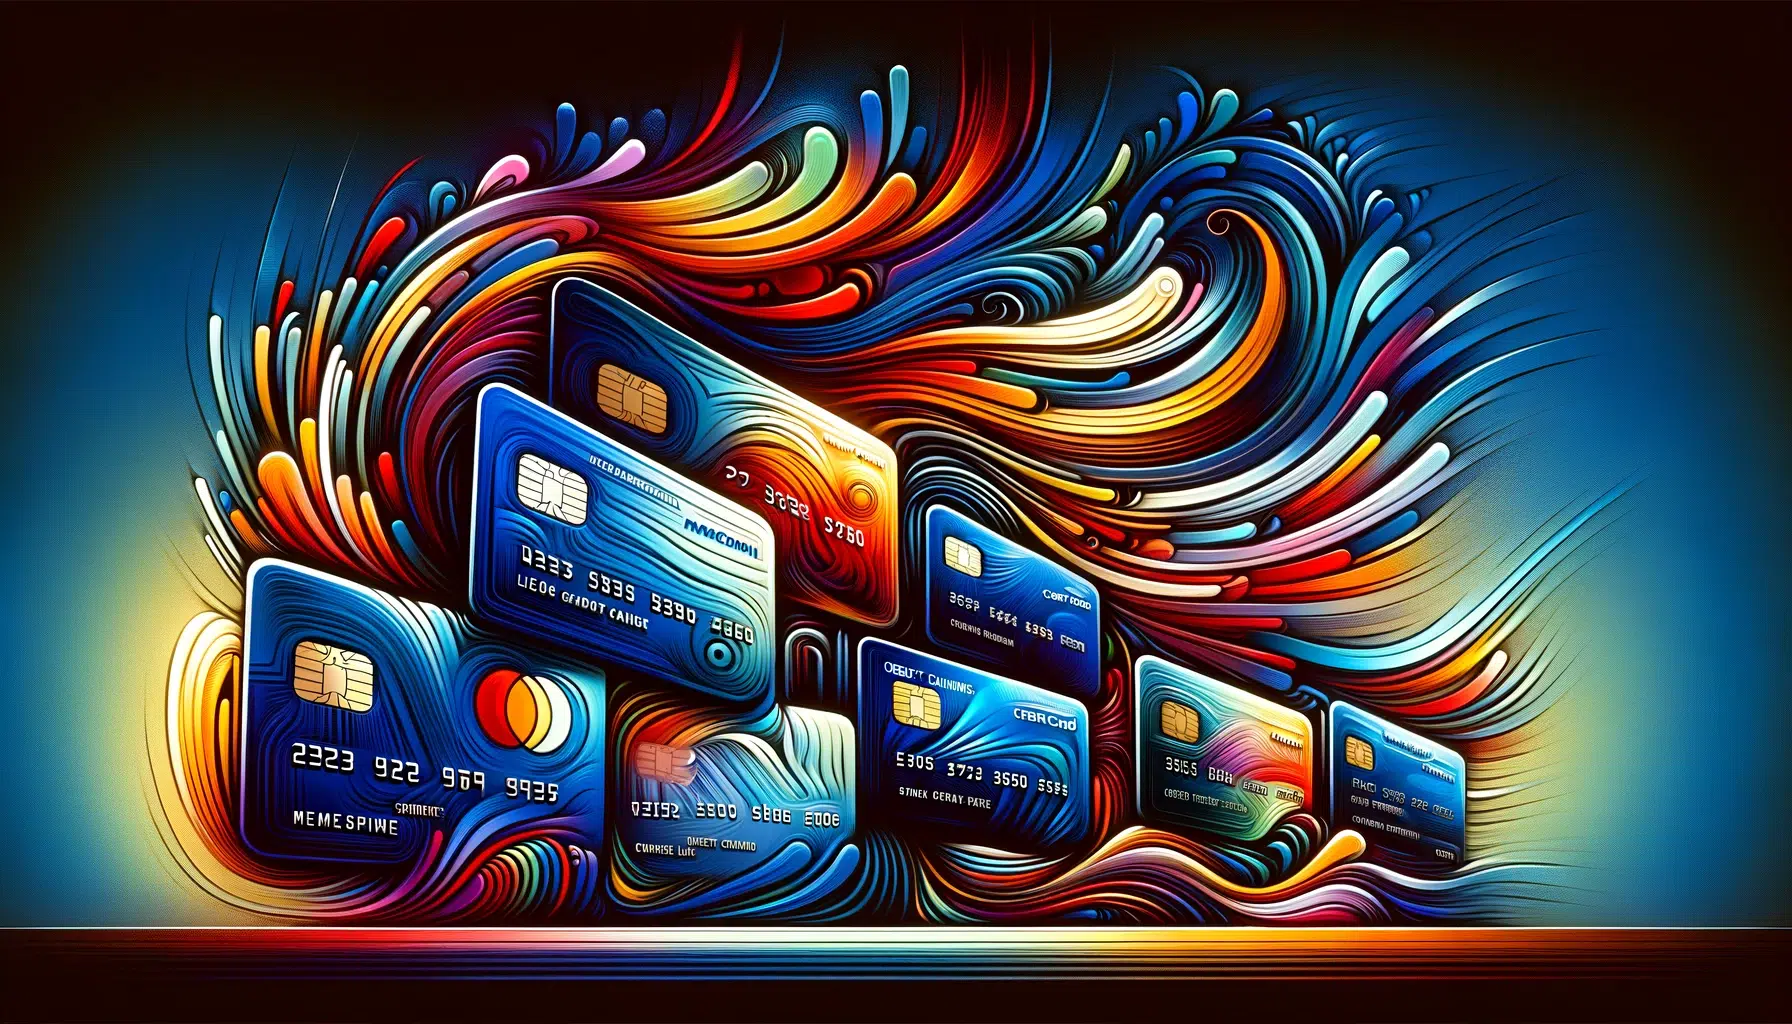 Abuso de tarjetas de crédito o débito